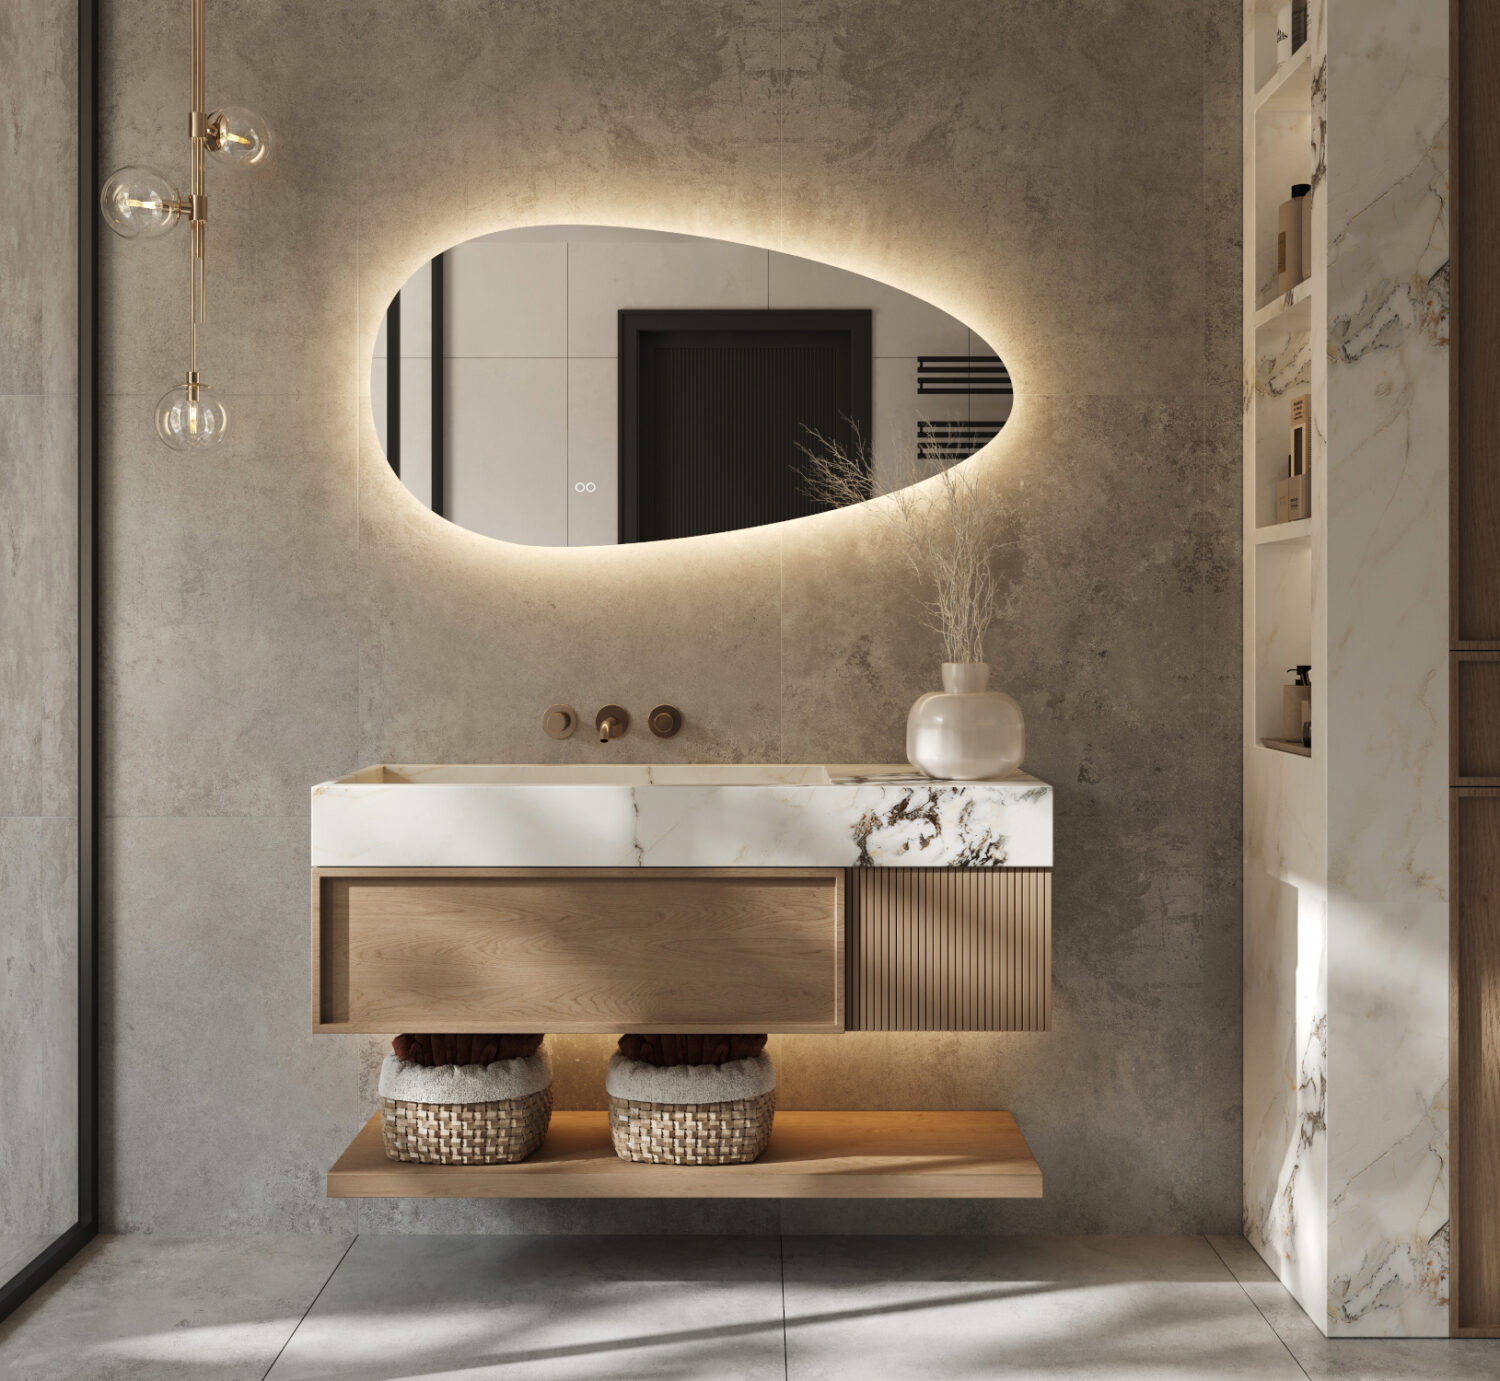 Organische badkamerspiegel met LED verwarming, instelbare lichtkleur en dimfunctie 120x60 cm - Designspiegels